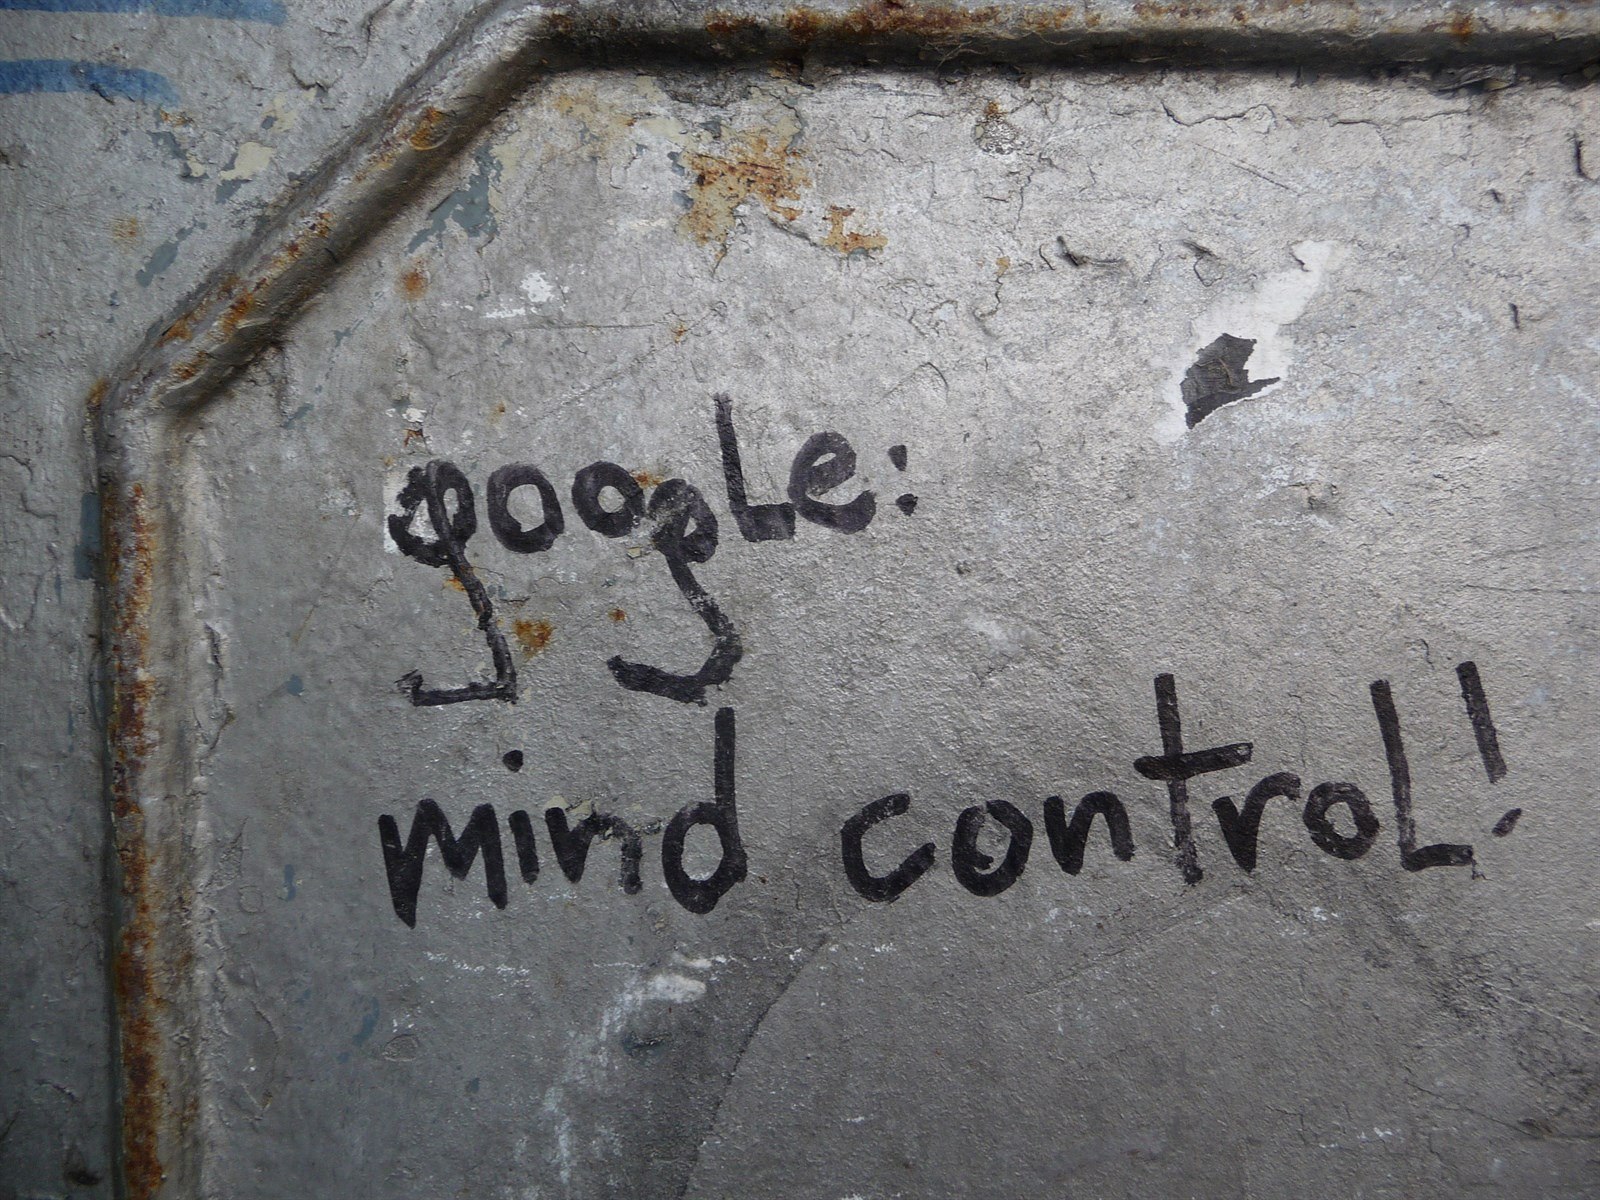 Google: kontrola mysli, hlásá nápis na jedné z londýnských zdí.